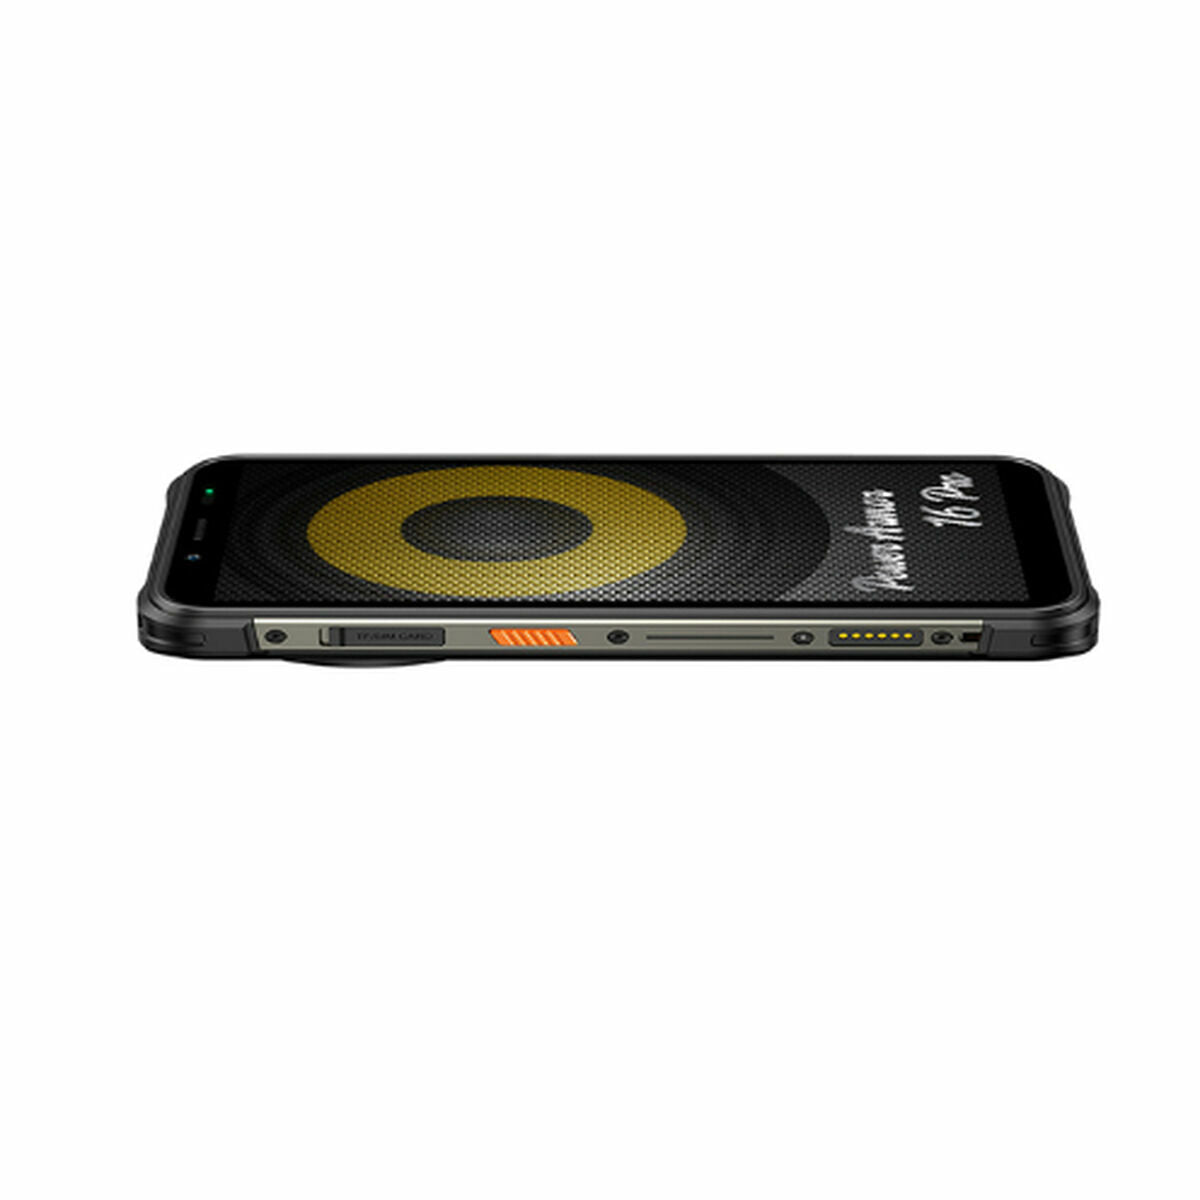 Smartphone Ulefone Armor 16 PRO Black 5,93" 4 GB RAM ARM Cortex-A53 64 GB